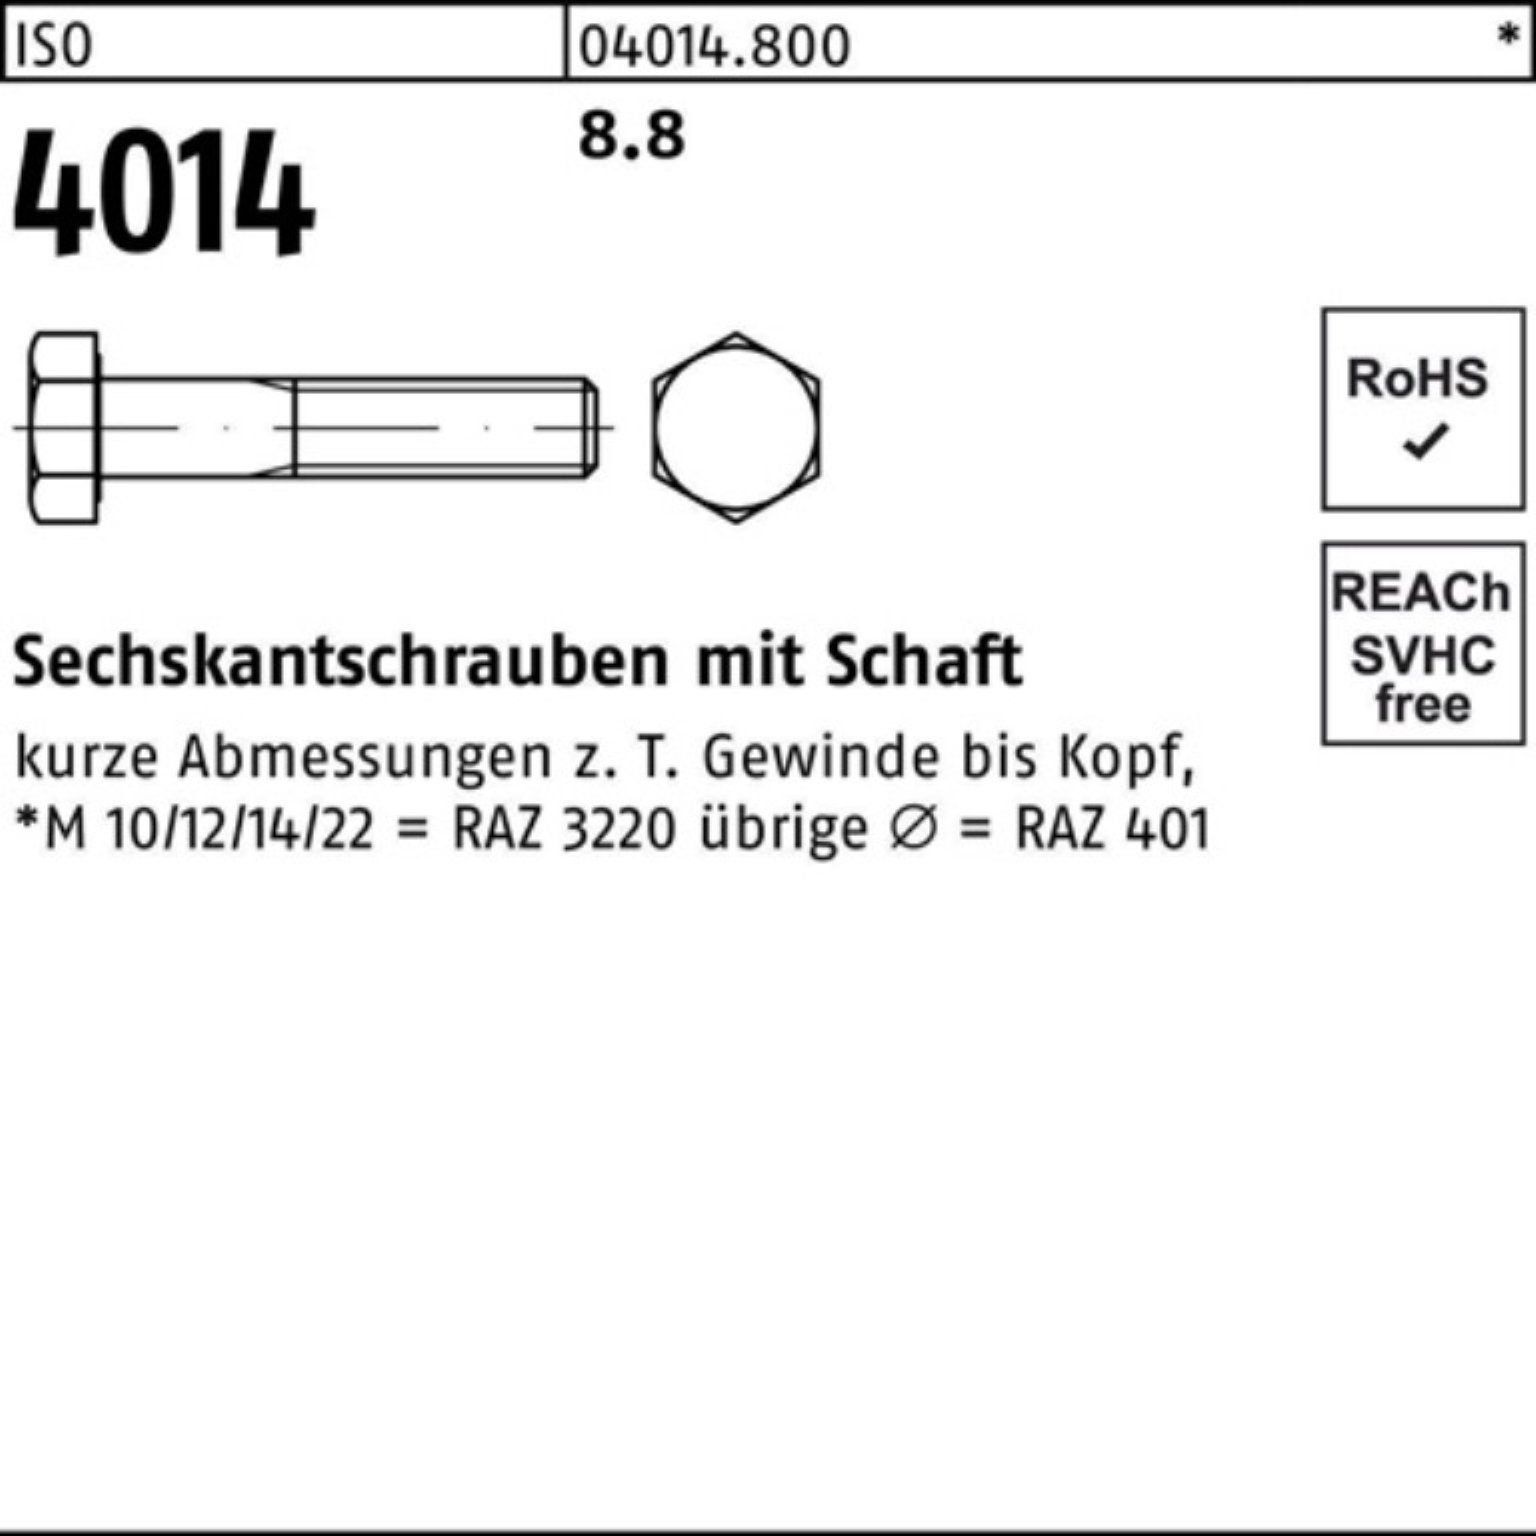 Pack 8.8 25 Sechskantschraube 4014 M12x 100er Sechskantschraube Bufab Stück Schaft IS ISO 480